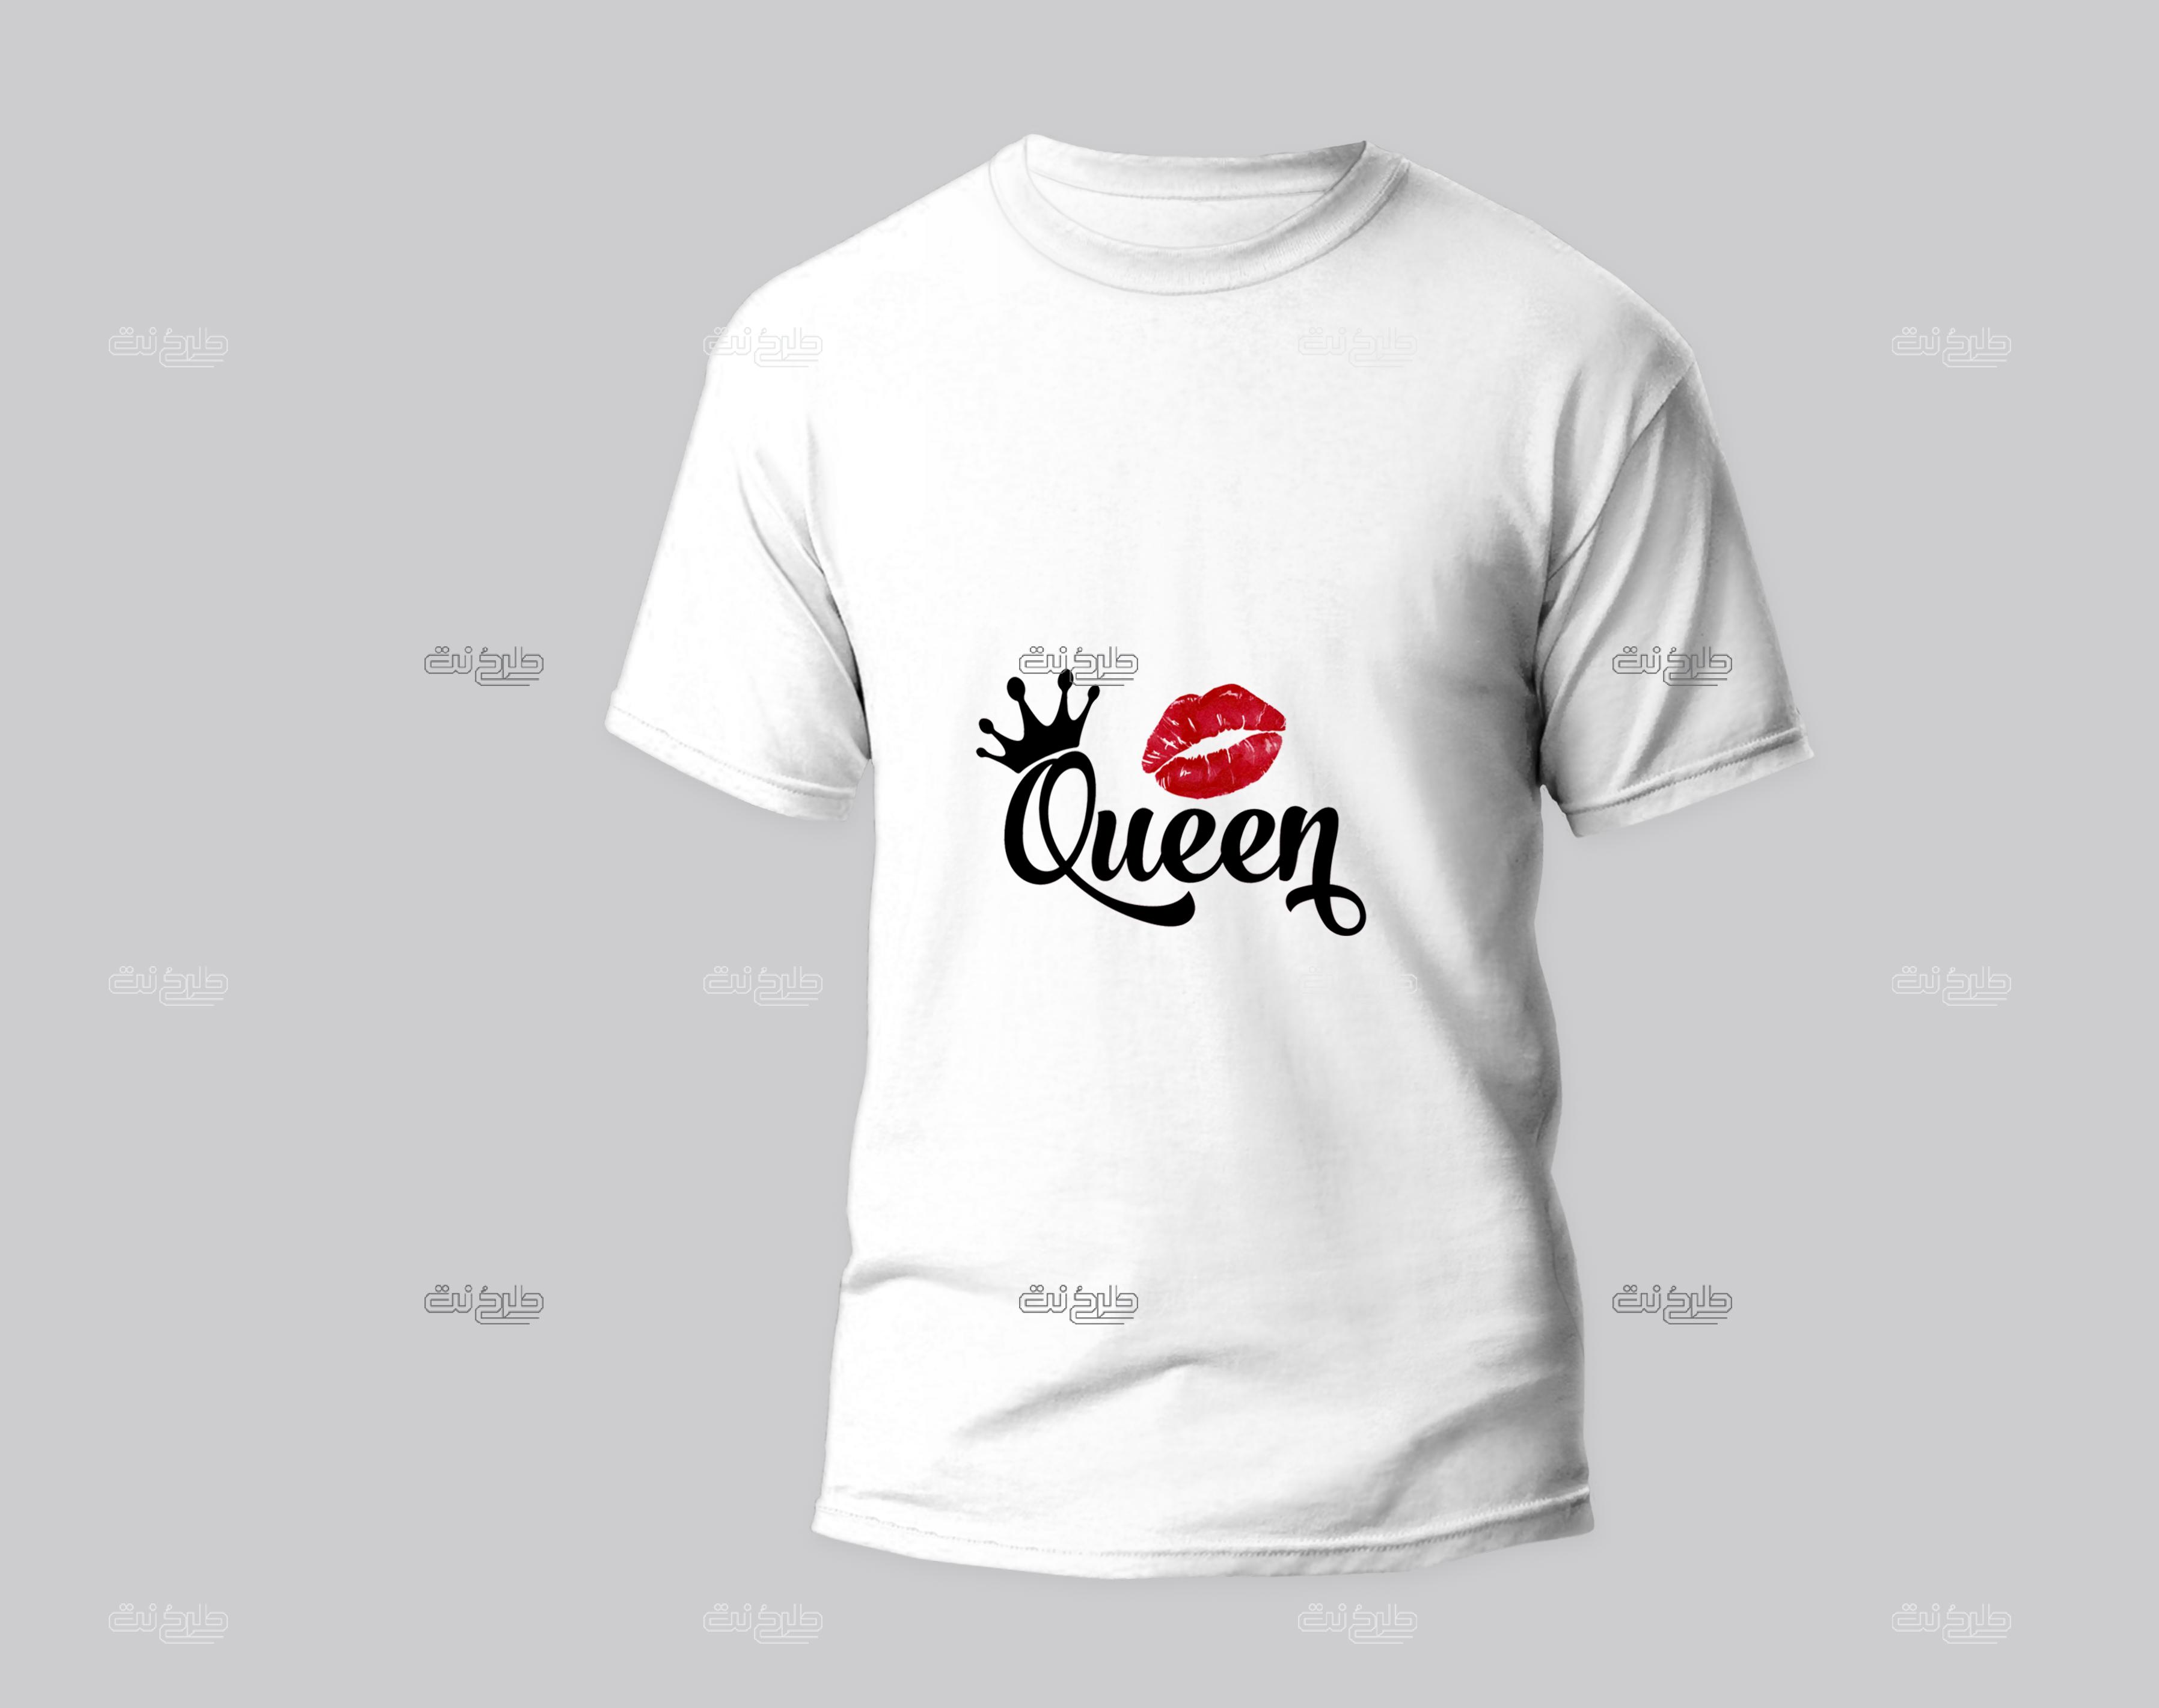 دانلود طرح لایه باز تیشرت لب و تاج با متن "Queen"